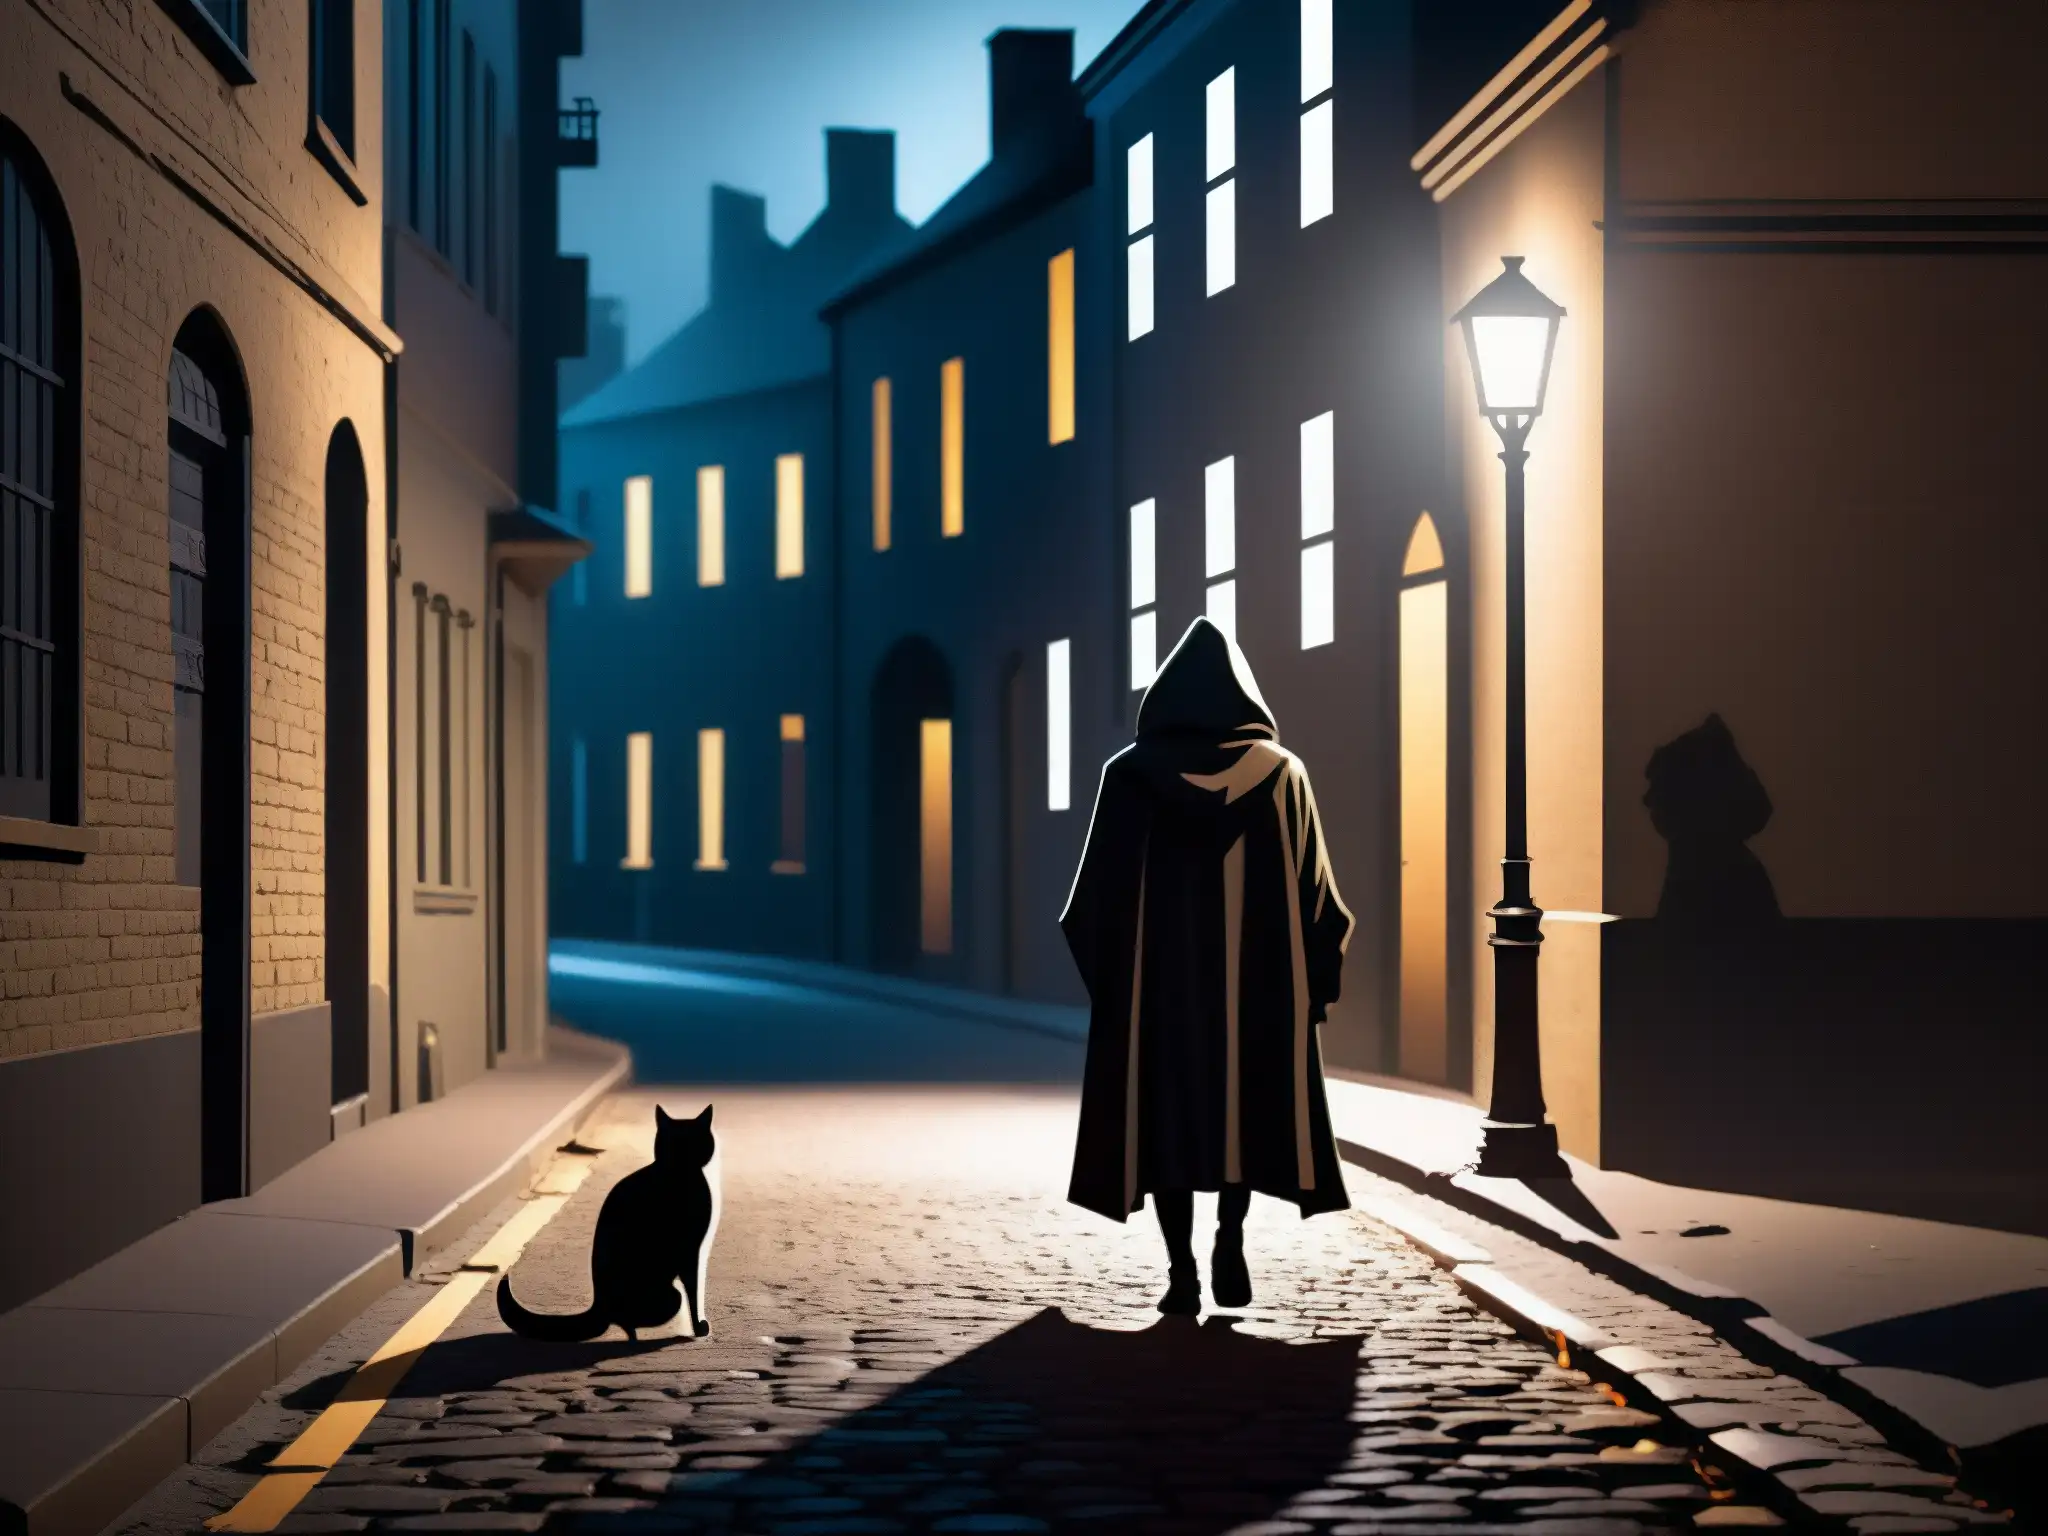 En una oscura calle de la ciudad de noche, con figuras misteriosas y un aura sobrenatural, perpetuación de supersticiones en leyendas urbanas